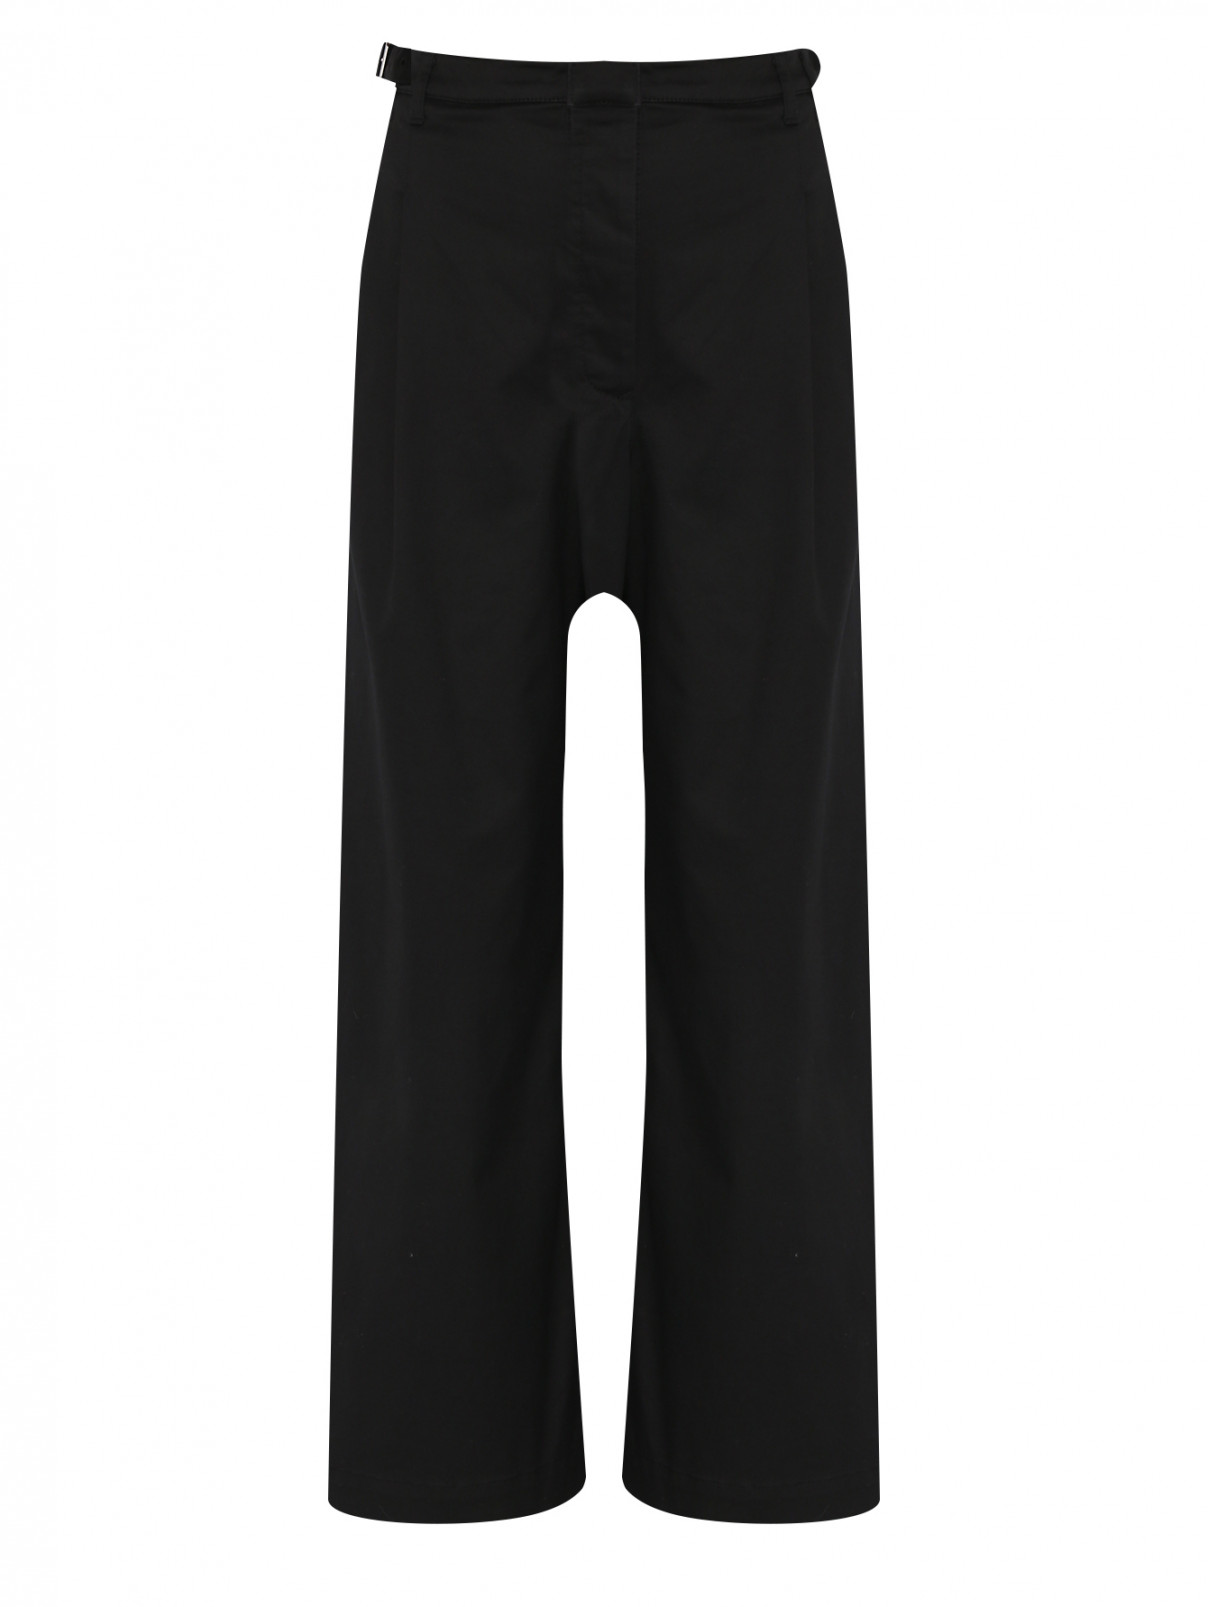 Широкие брюки из хлопка с карманами Proenza Schouler  –  Общий вид  – Цвет:  Черный